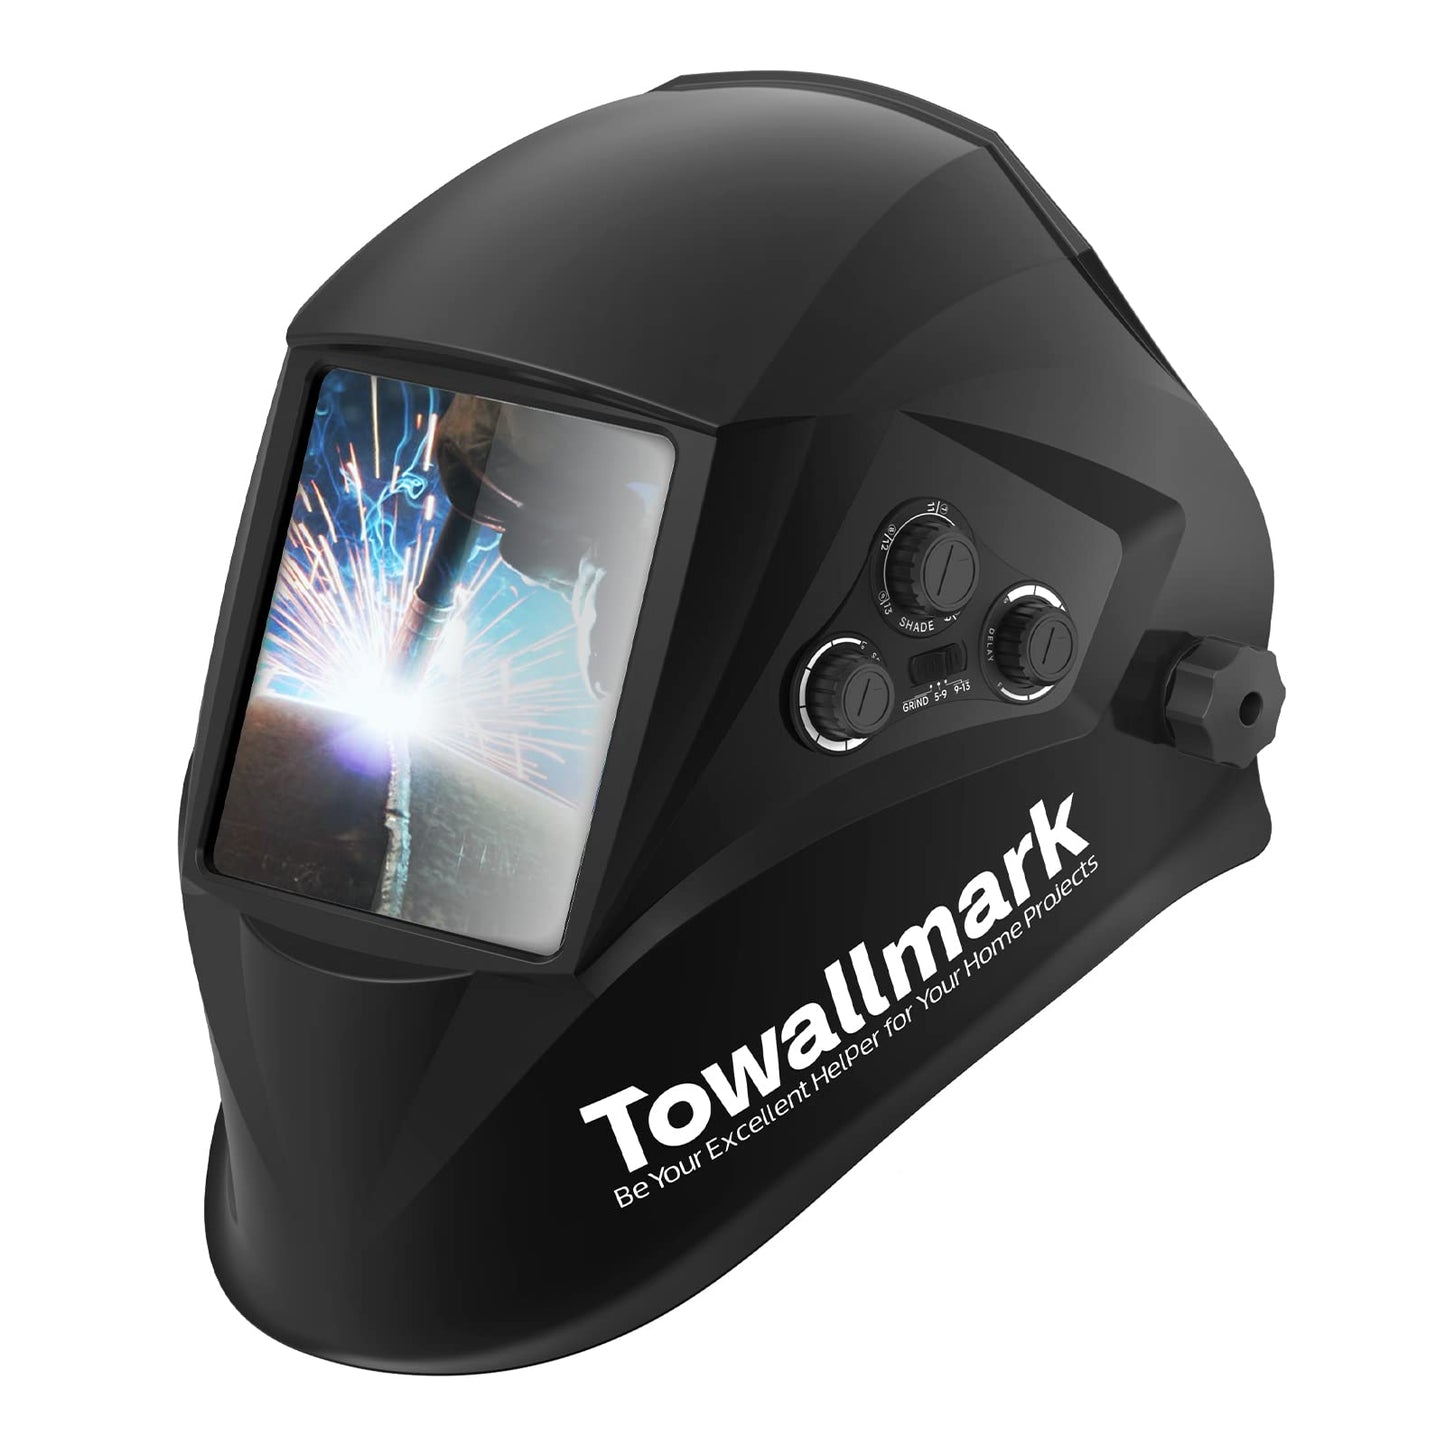 Towallmark Auto Darkening Welding Helmet 3.95鈥澝?.9鈥?Large Viewing Welding Hood